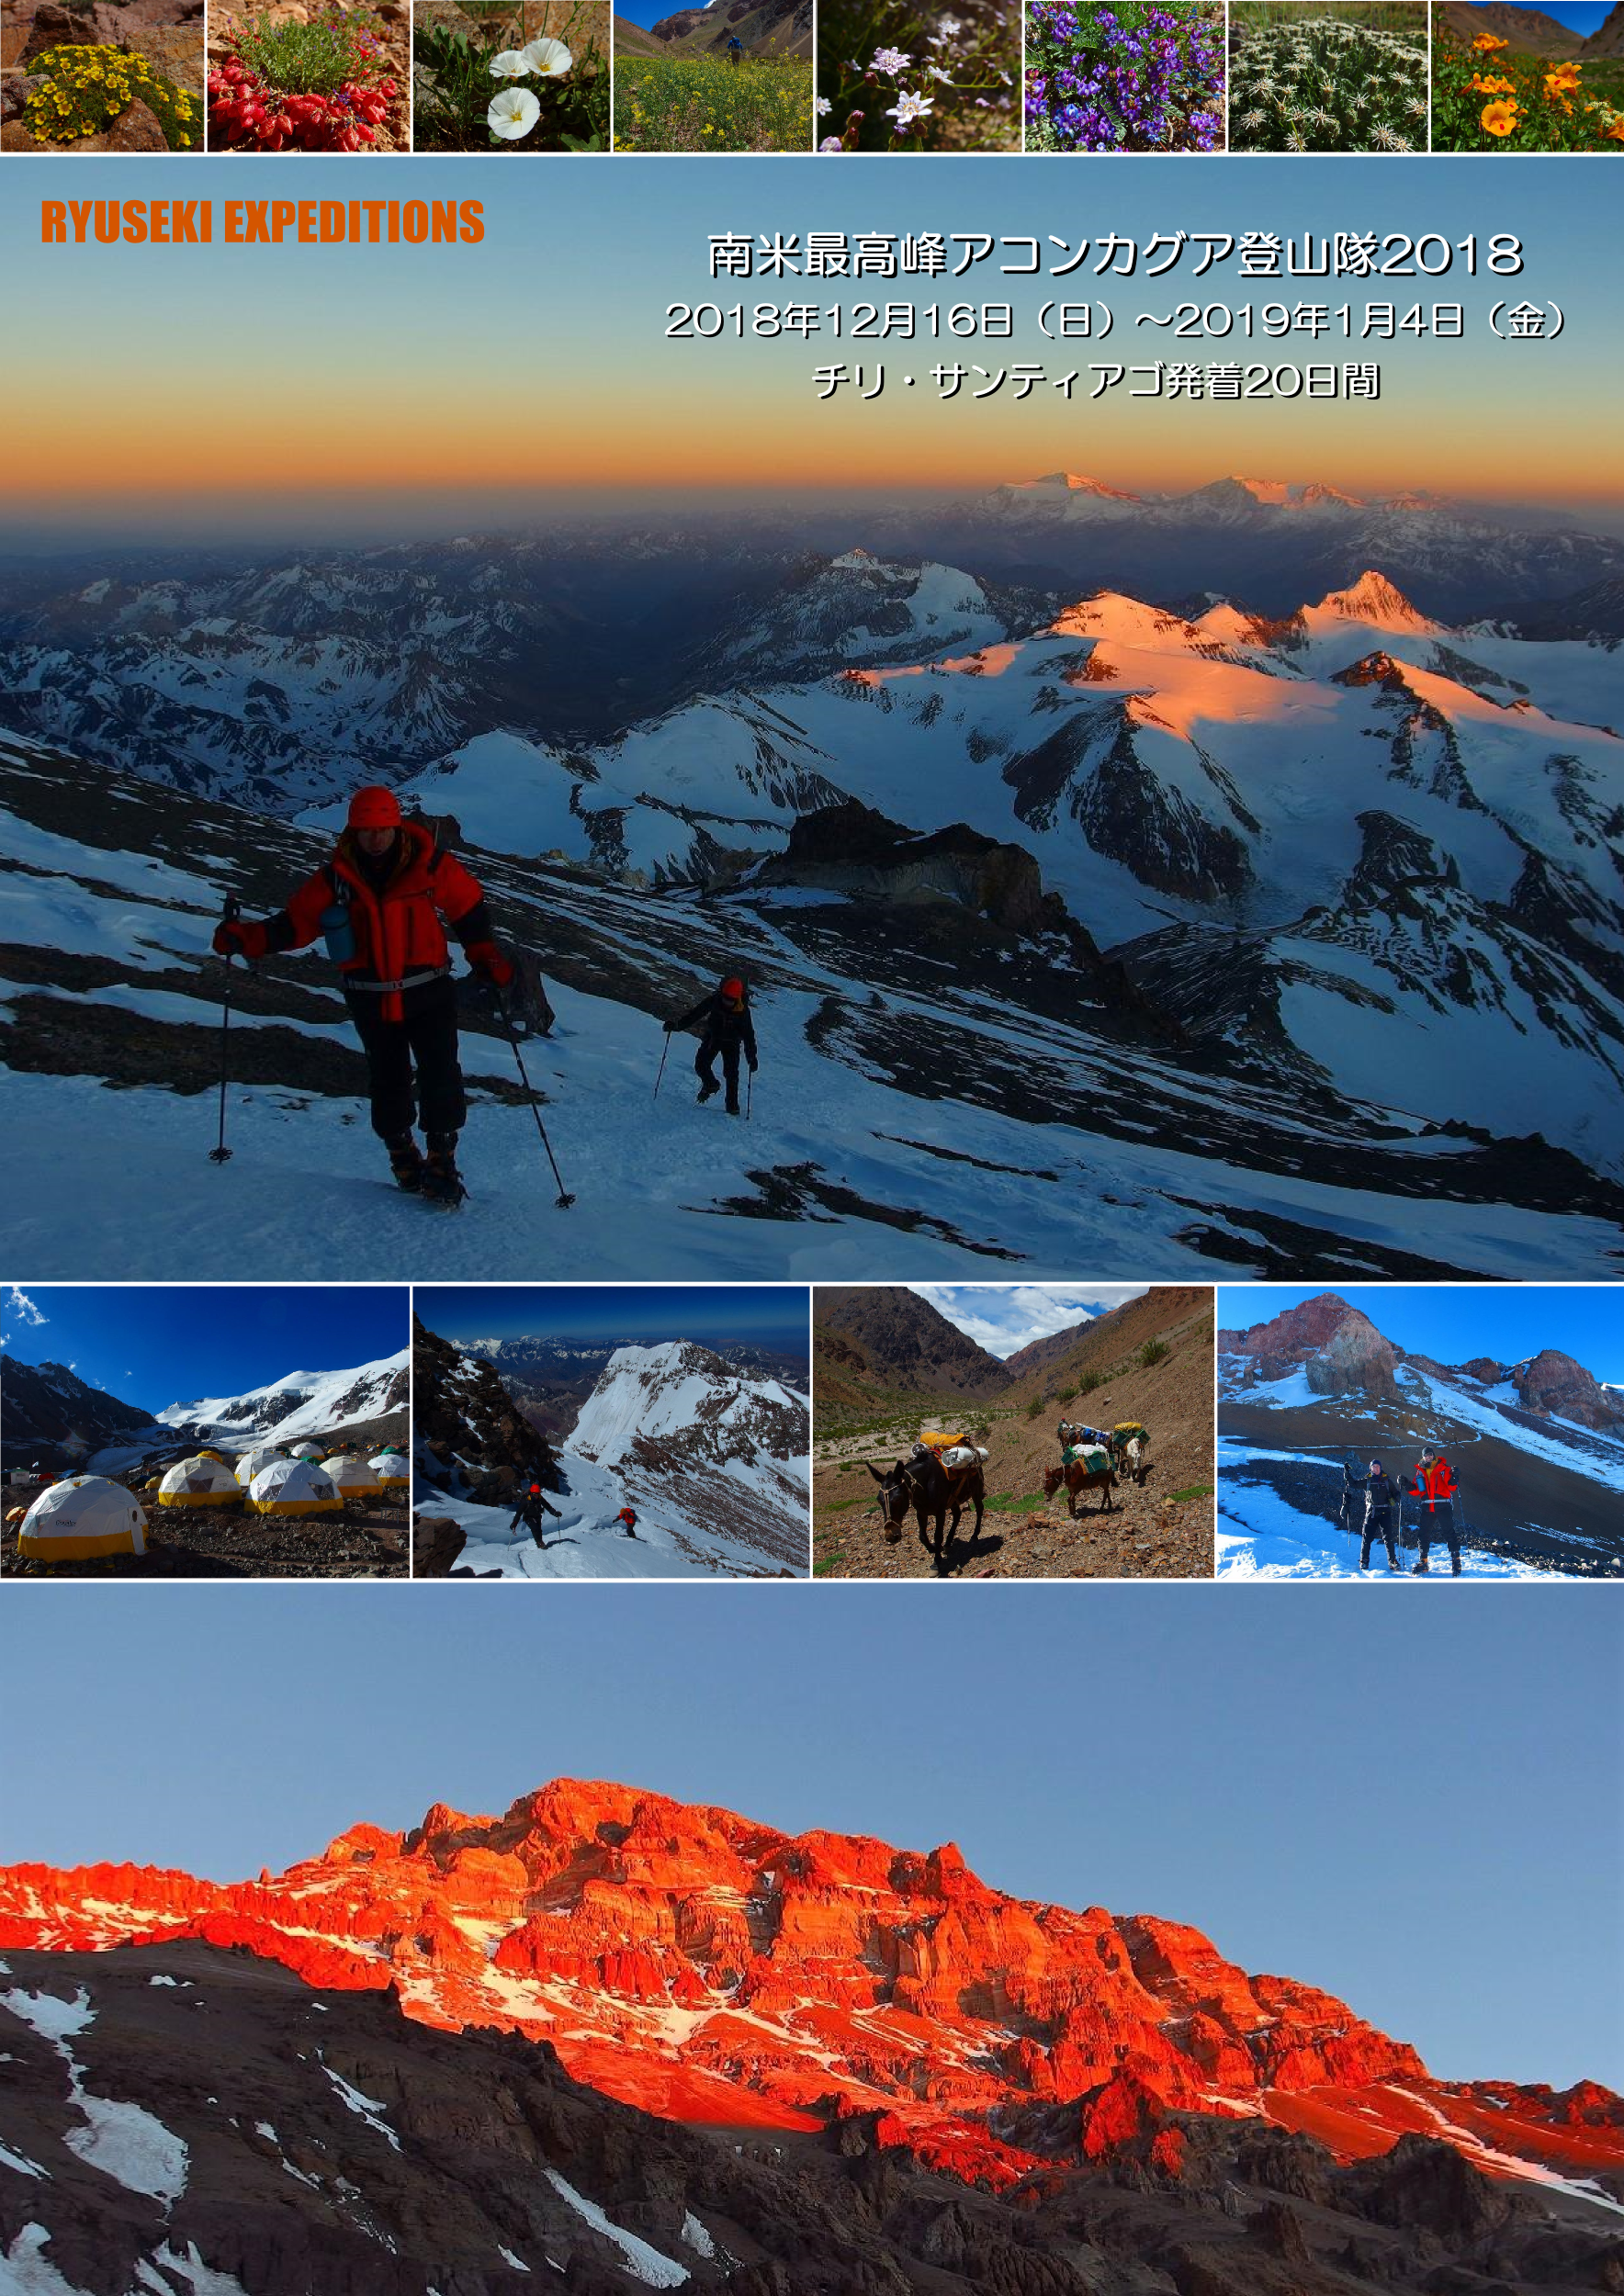 南米最高峰アコンカグア登山隊2018 6962m